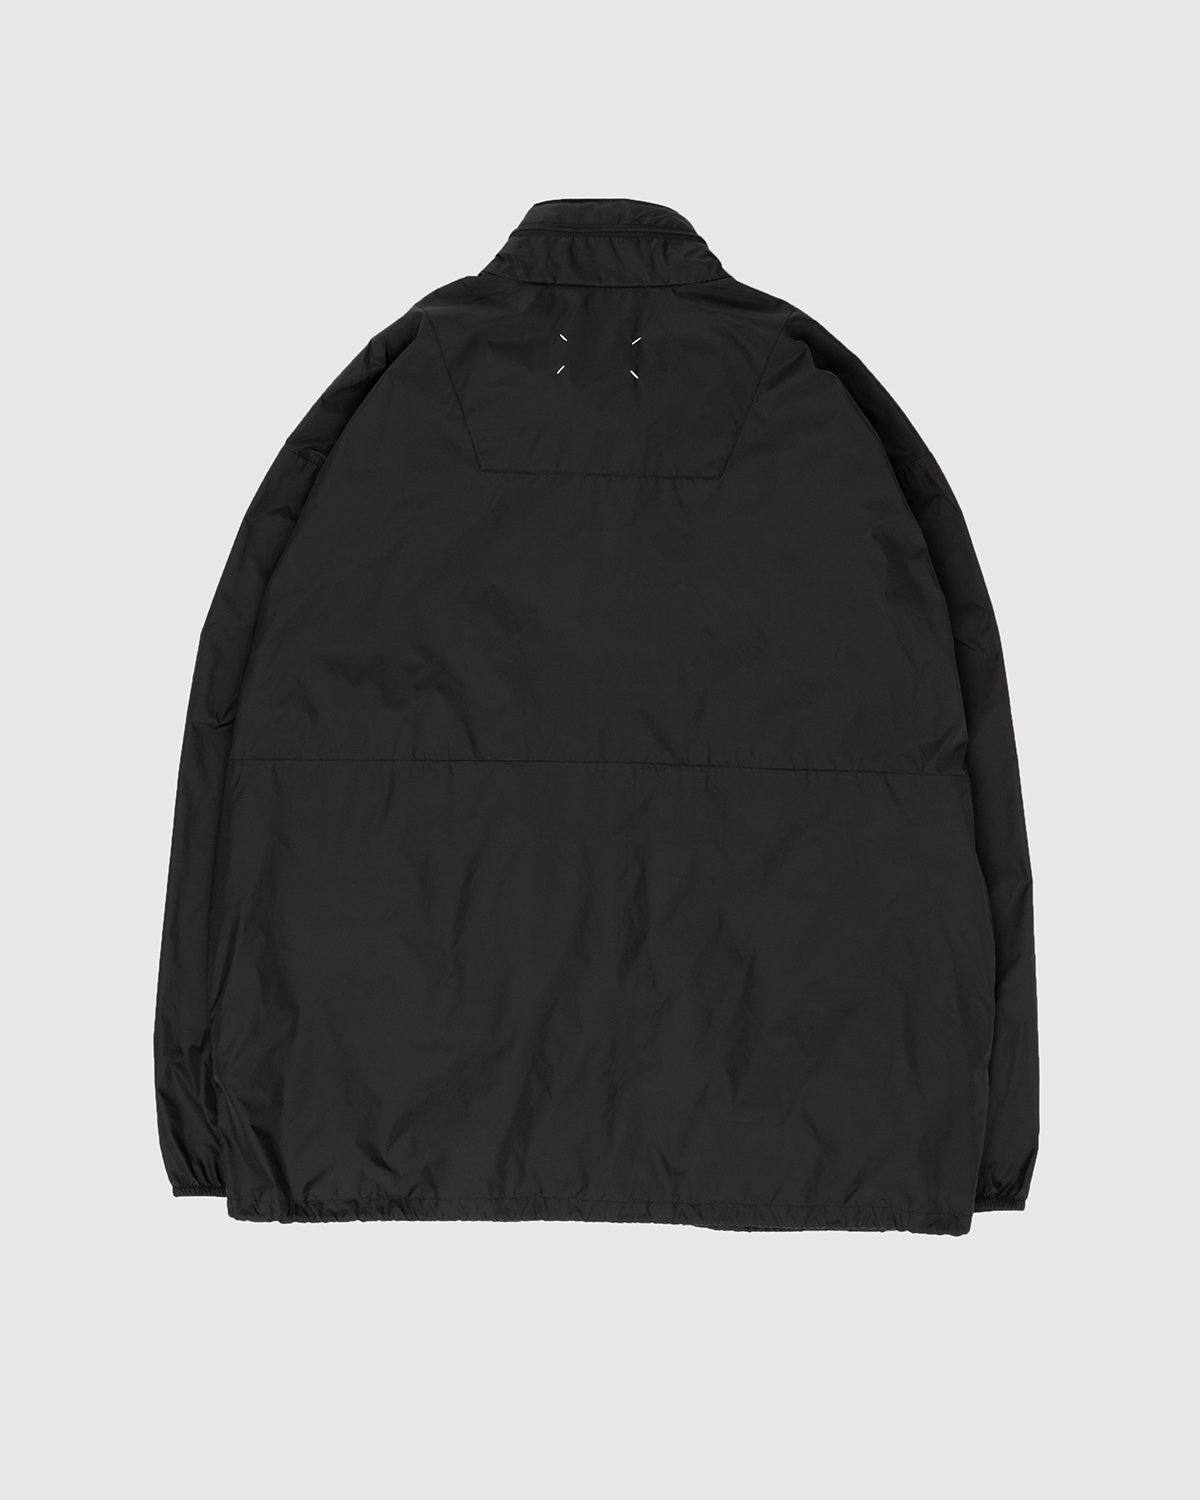 Maison Margiela - Outdoor Jacket - Clothing - Black - Image 7